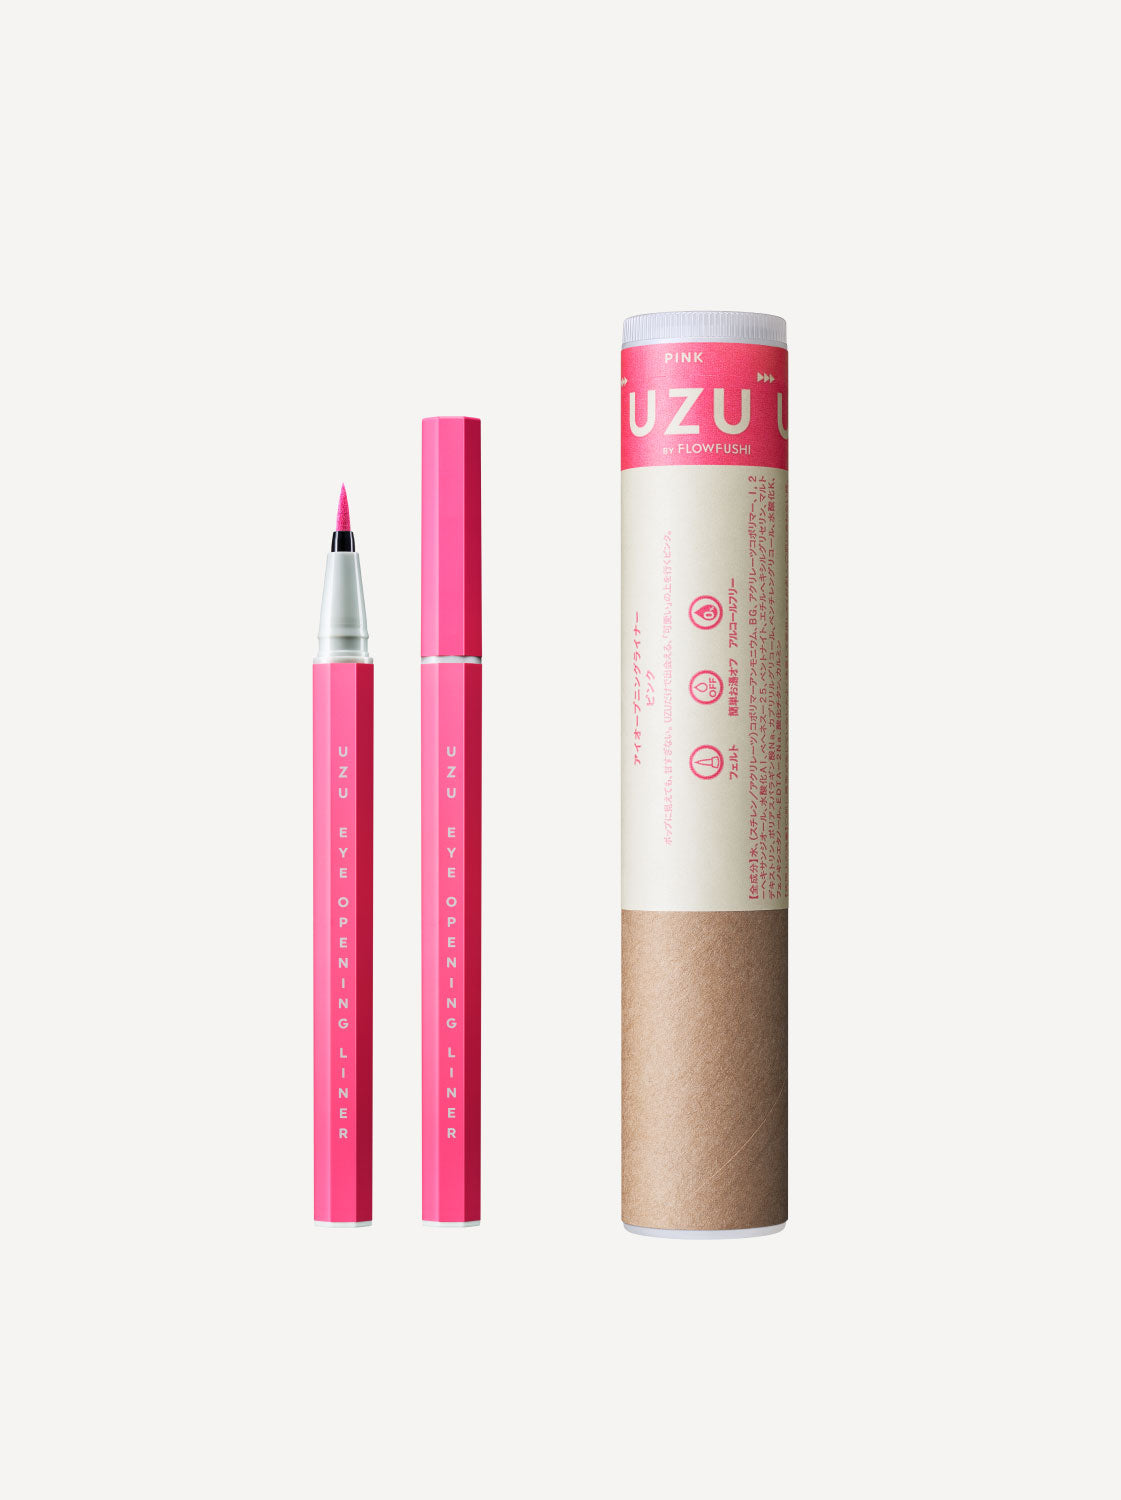 EYE OPENING LINER PINK(ピンク) | UZU BY FLOWFUSHI